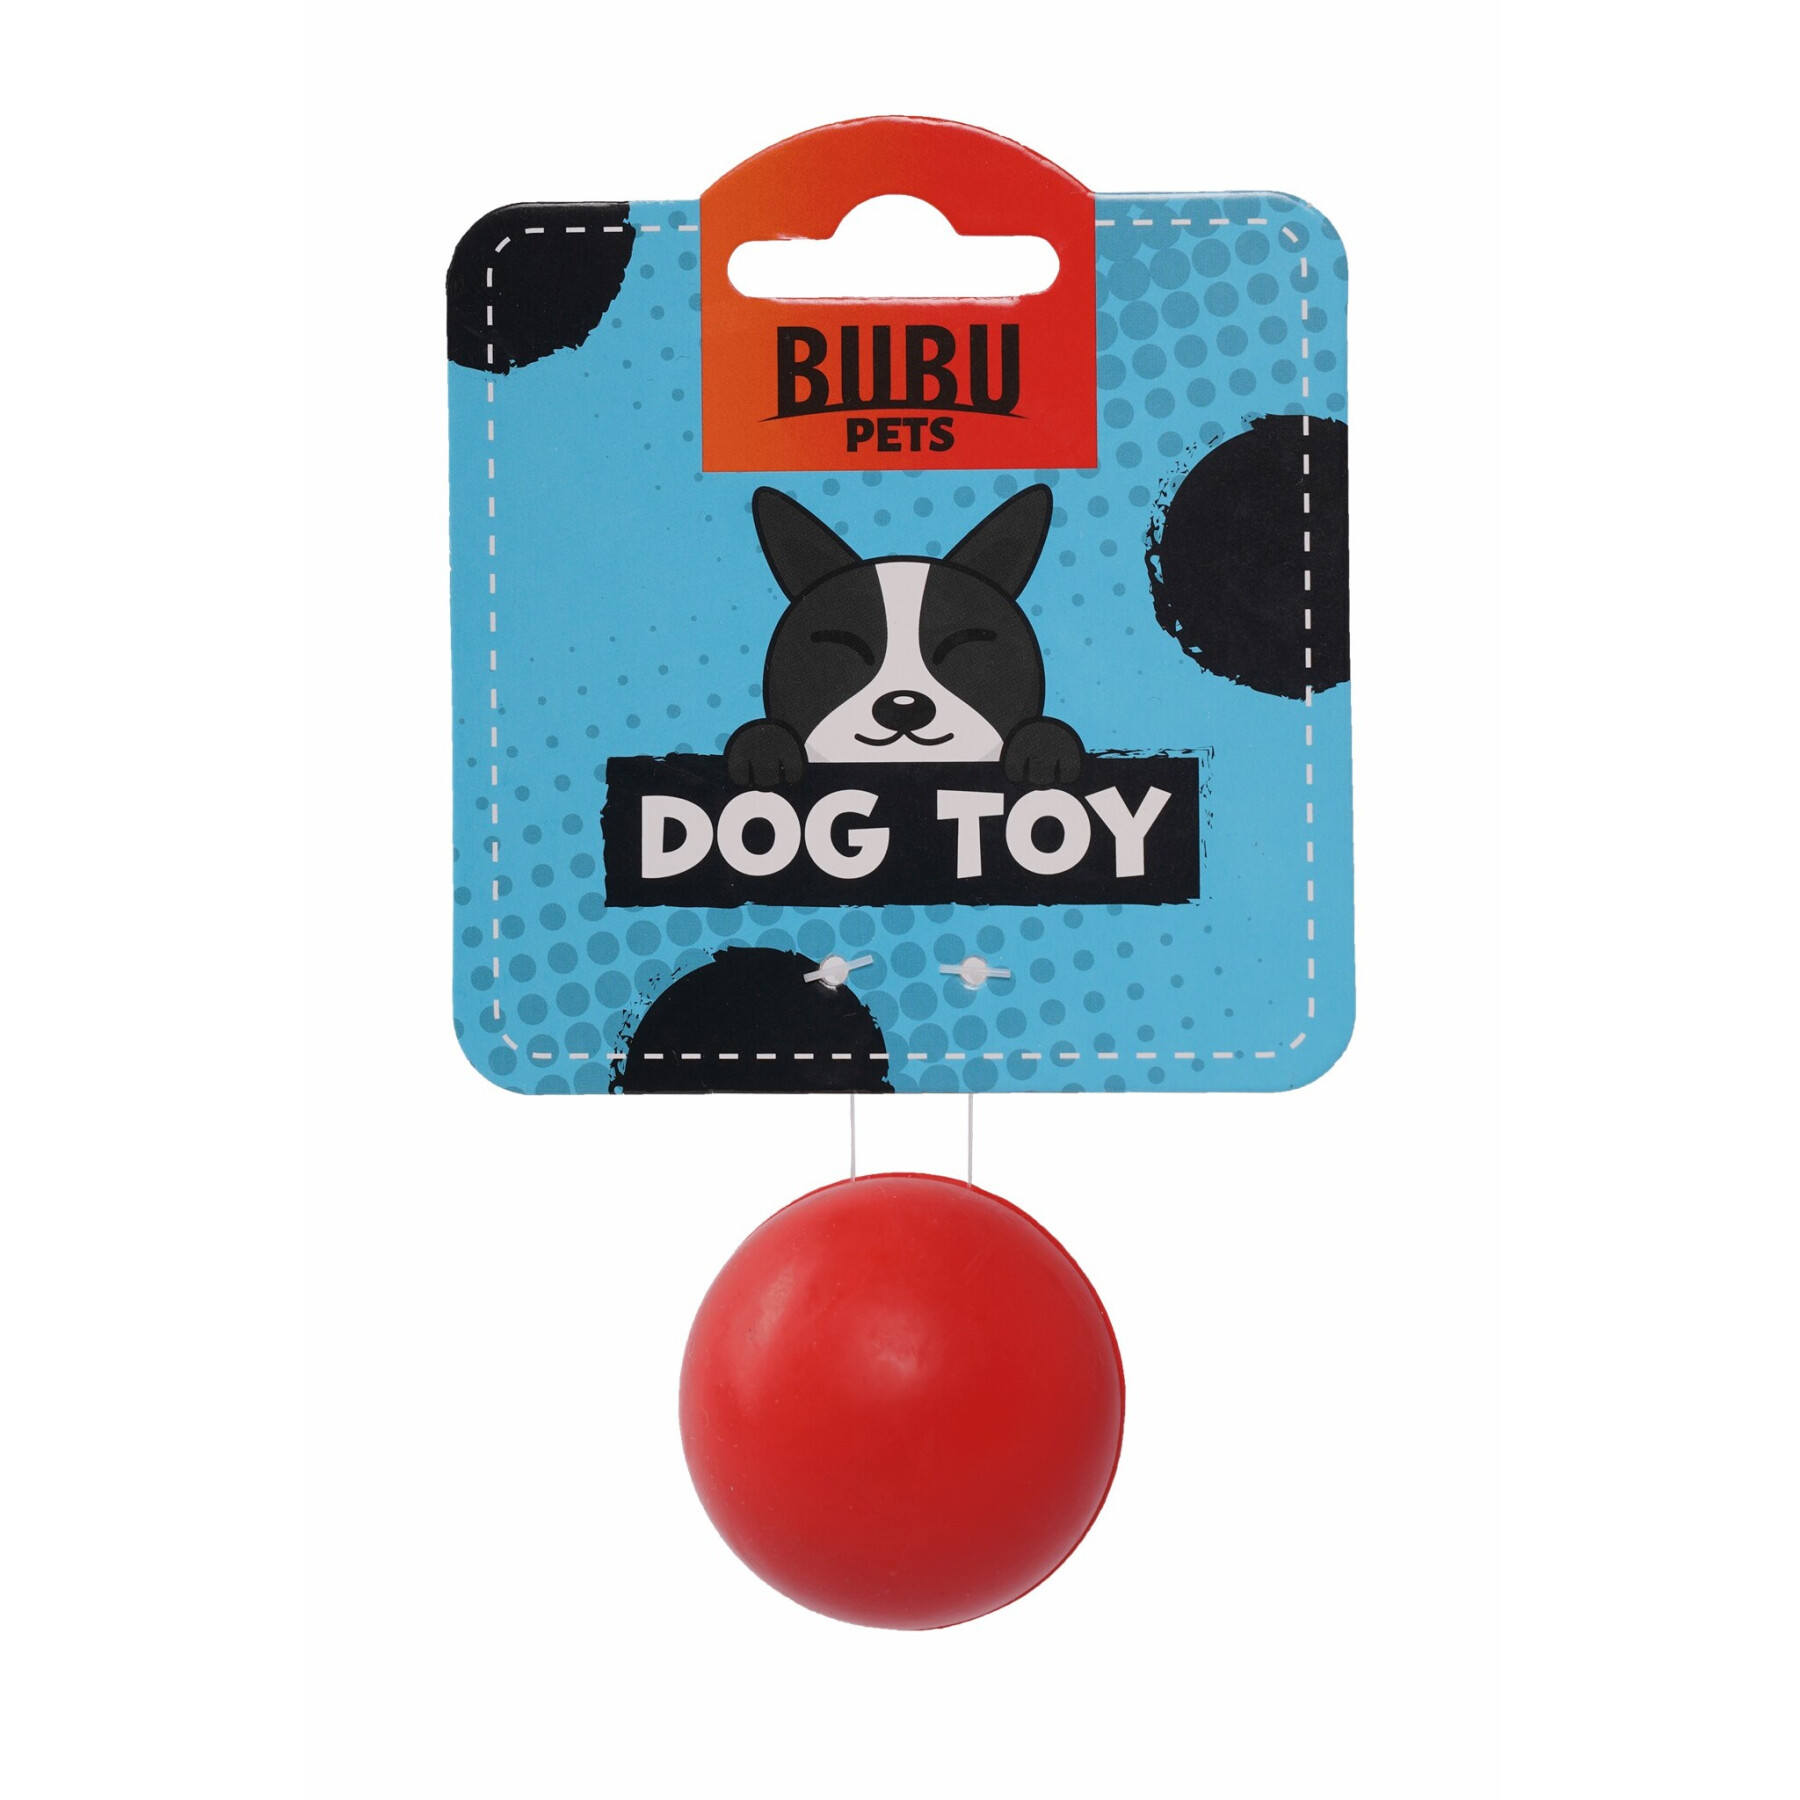 Stevige rubberen speelgoedbal voor honden BUBU Pets